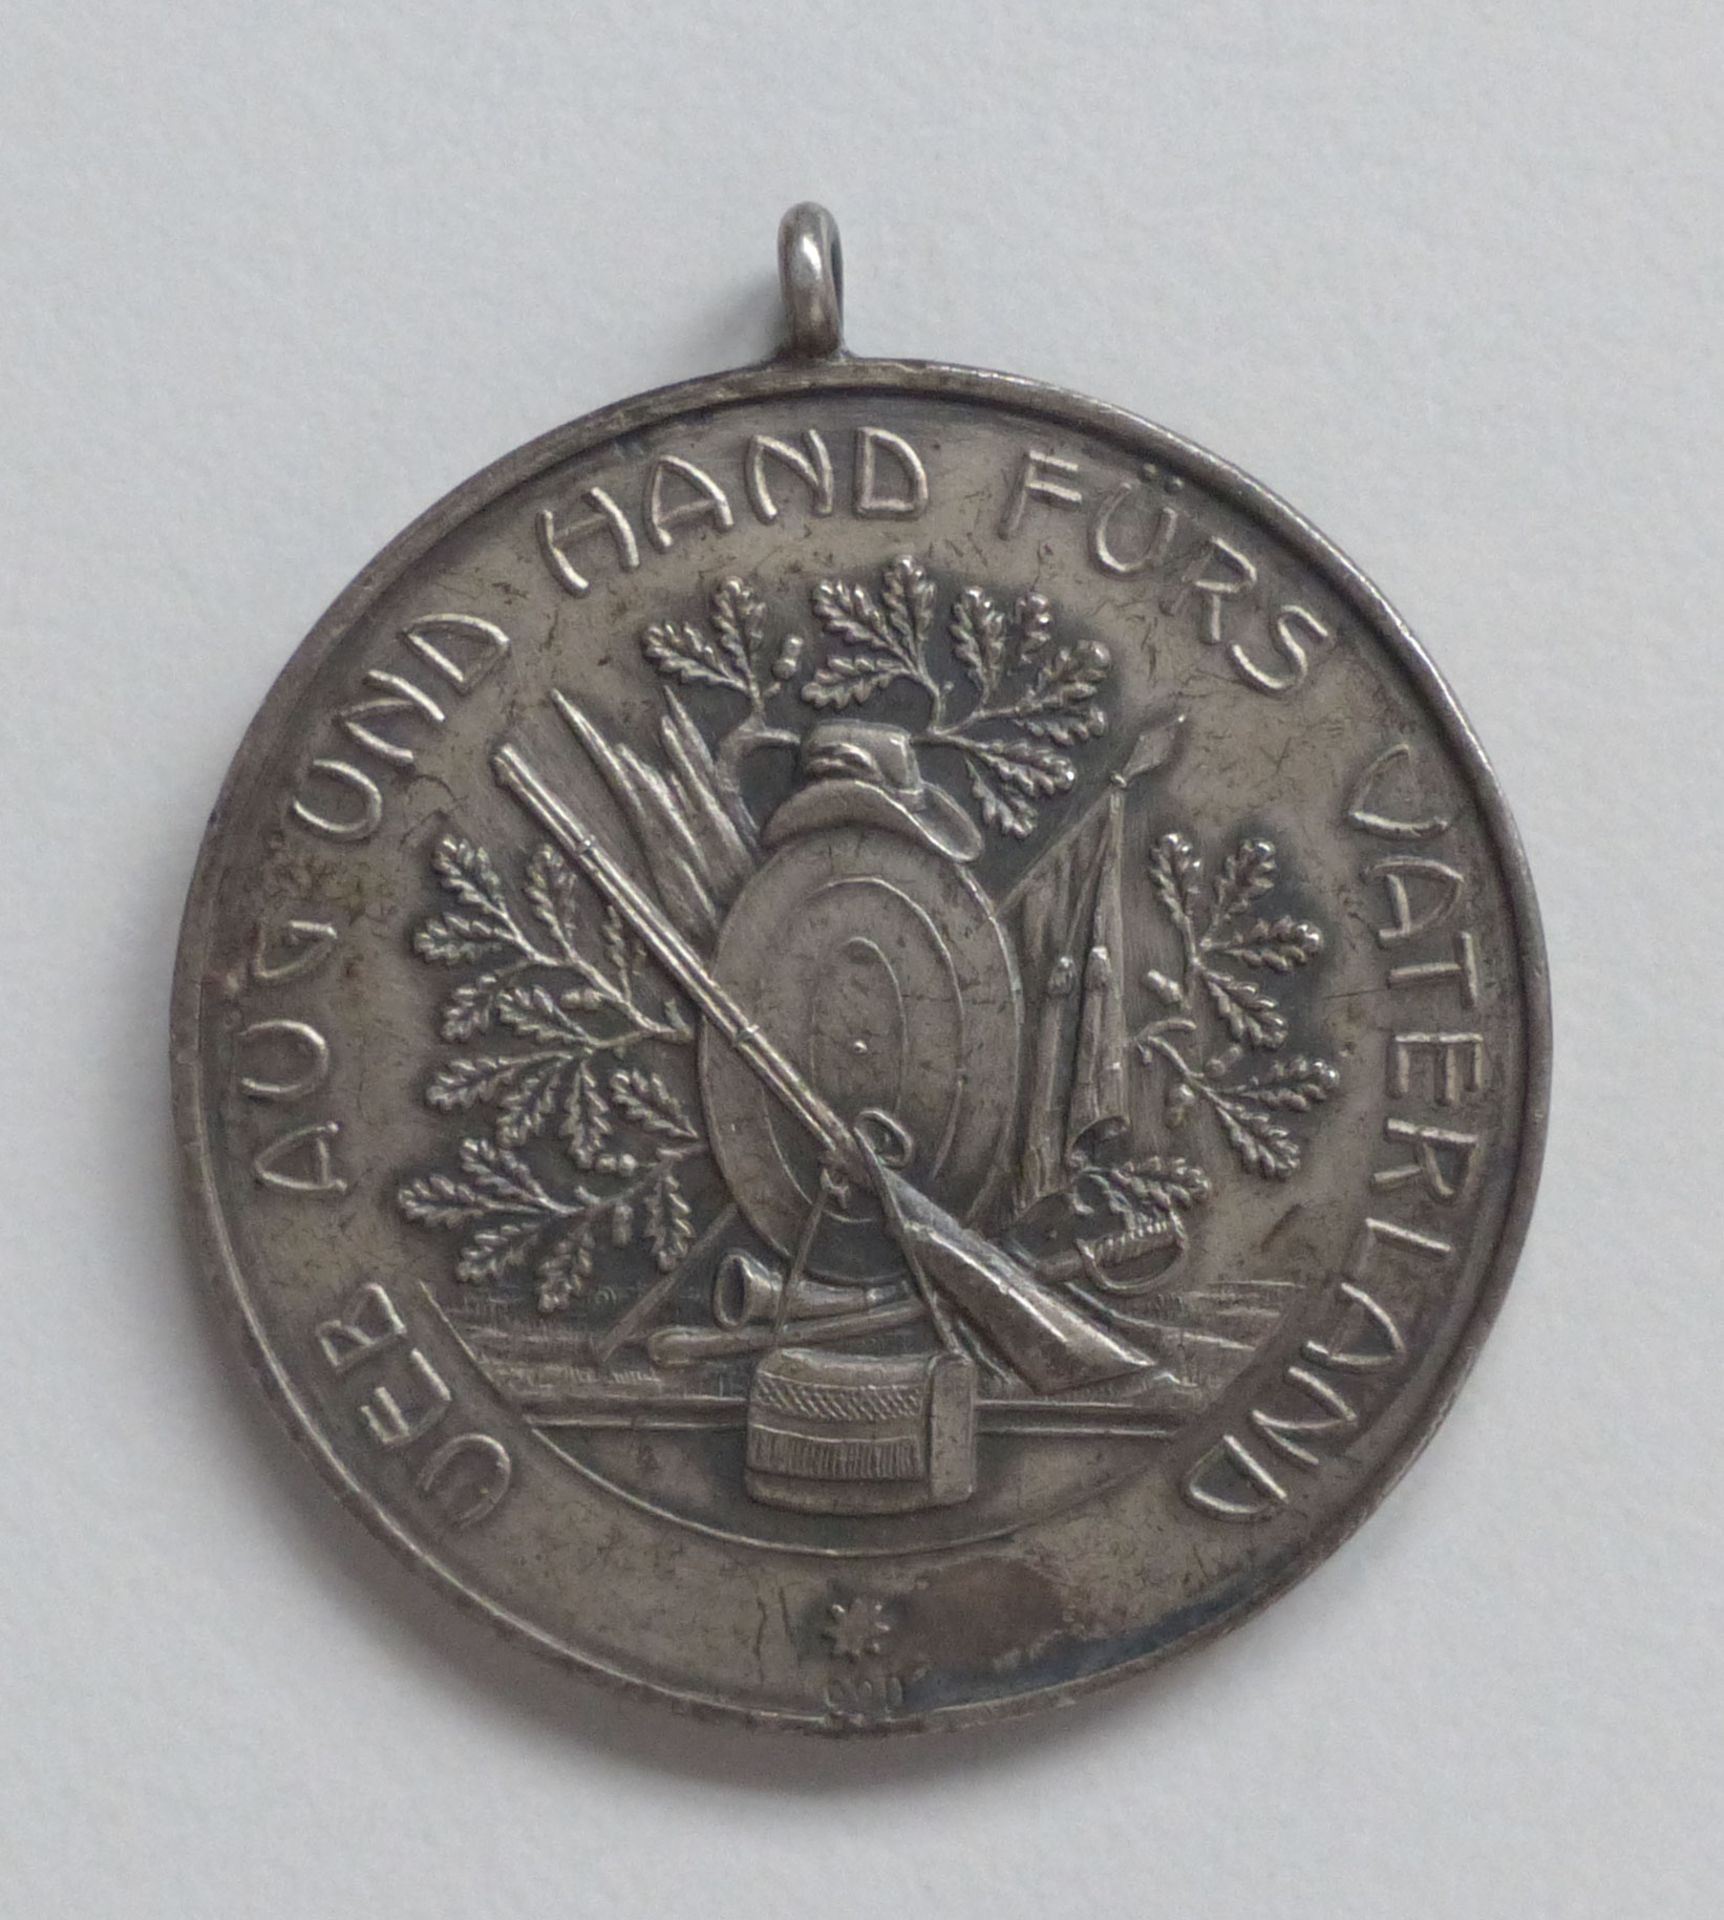 Schützen Estebrügge Medaille 1912, 300 Jahre Schützenguilde 30 mm Durchm. II